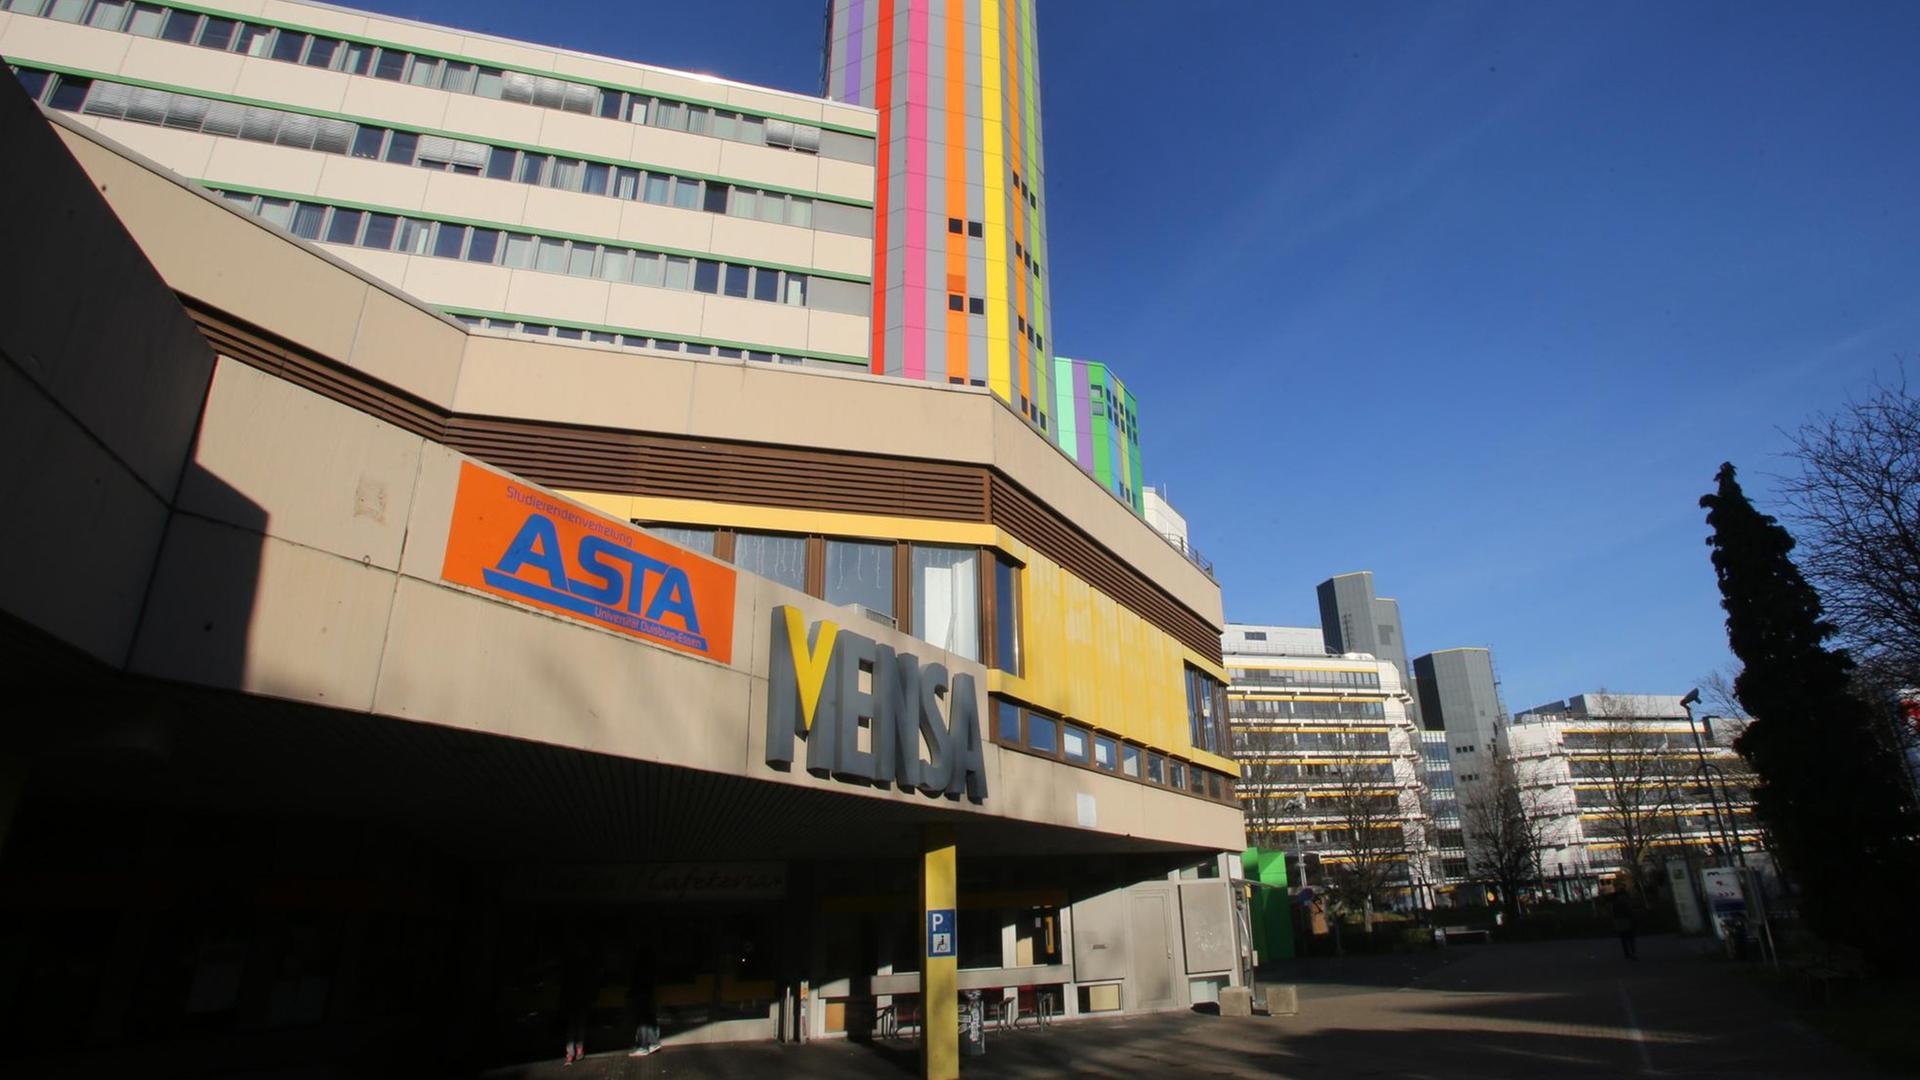 Gebäude der Universität Duisburg-Essen, aufgenommen am 30.12.2015 in Essen (Nordrhein-Westfalen).